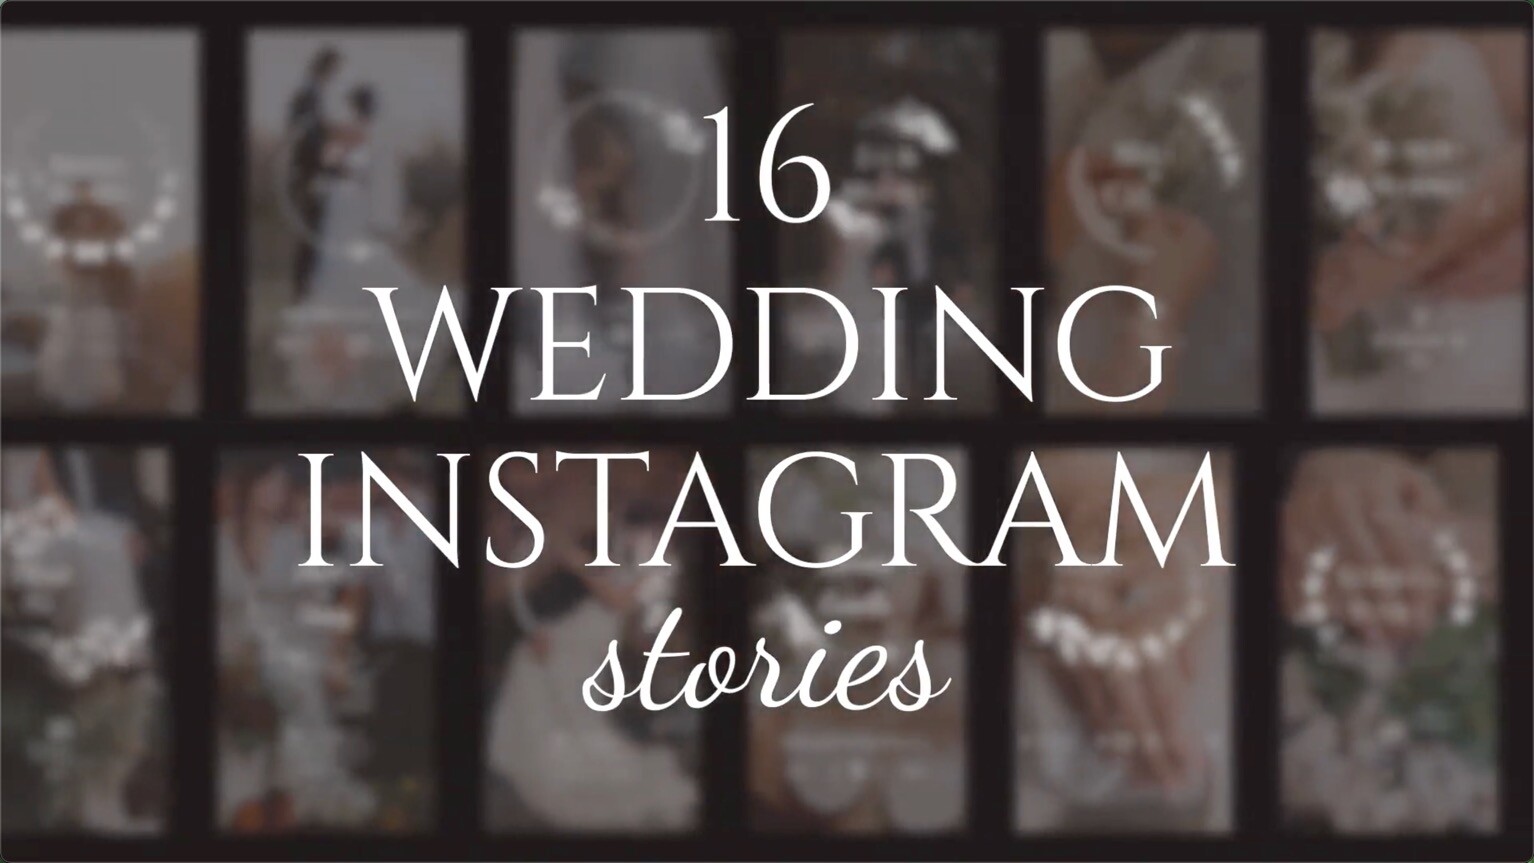 唯美浪漫手绘鲜花婚礼邀请函竖版卡片动画设计AE模板16 Wedding Instagram Stories